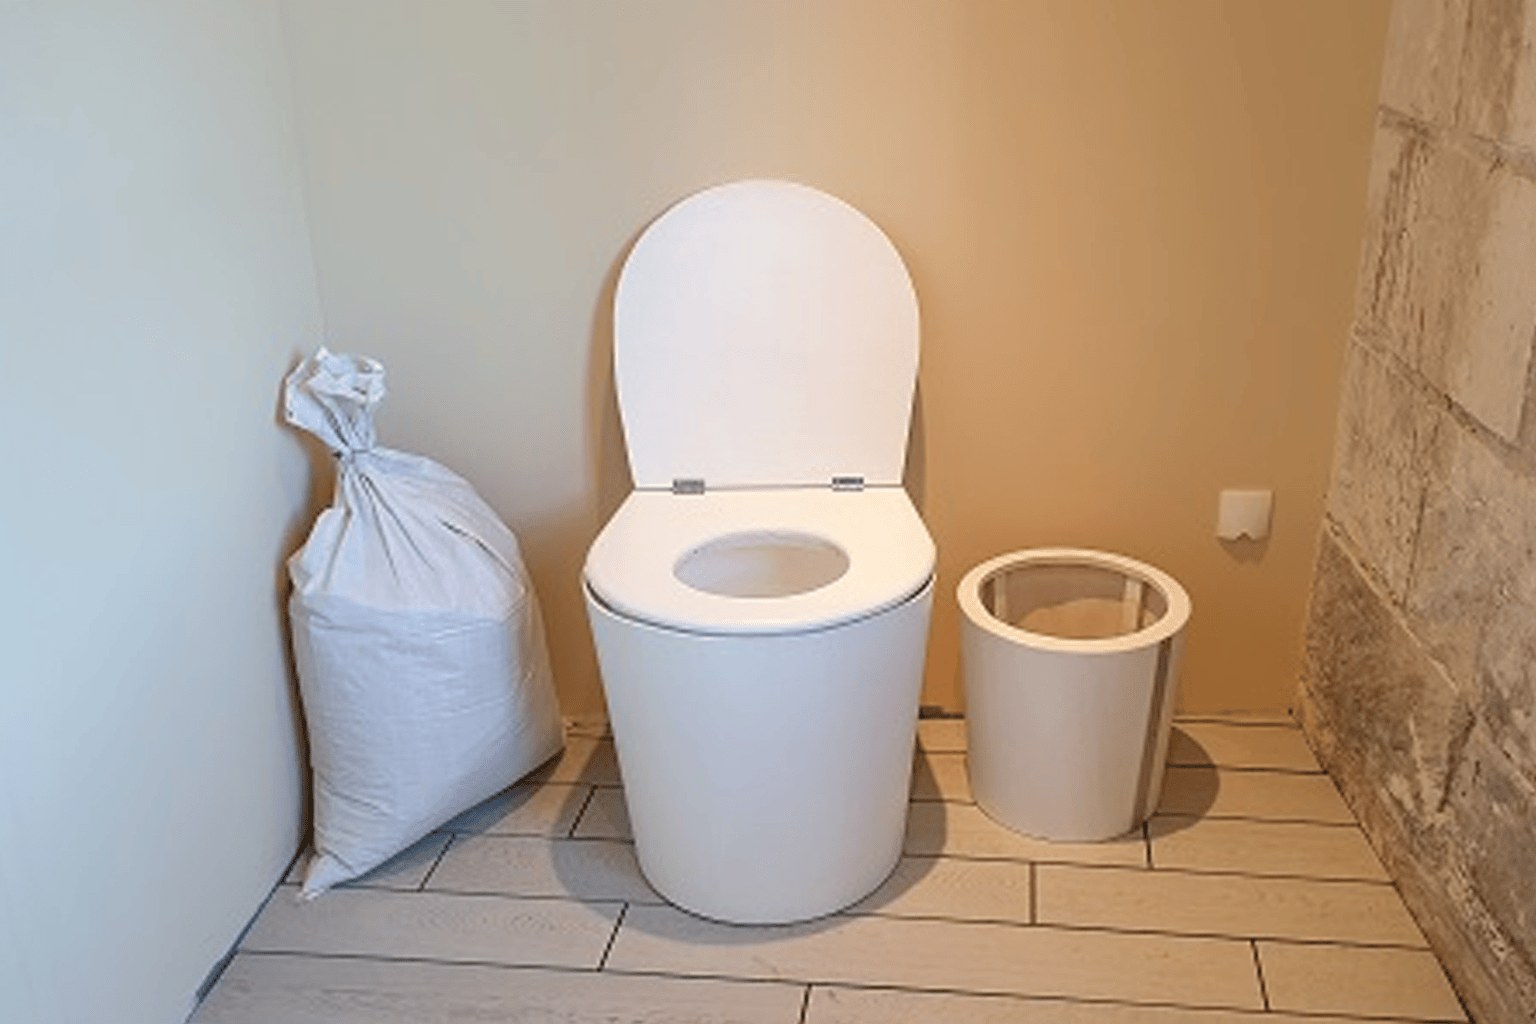 Vente de toilettes sèches éco 2